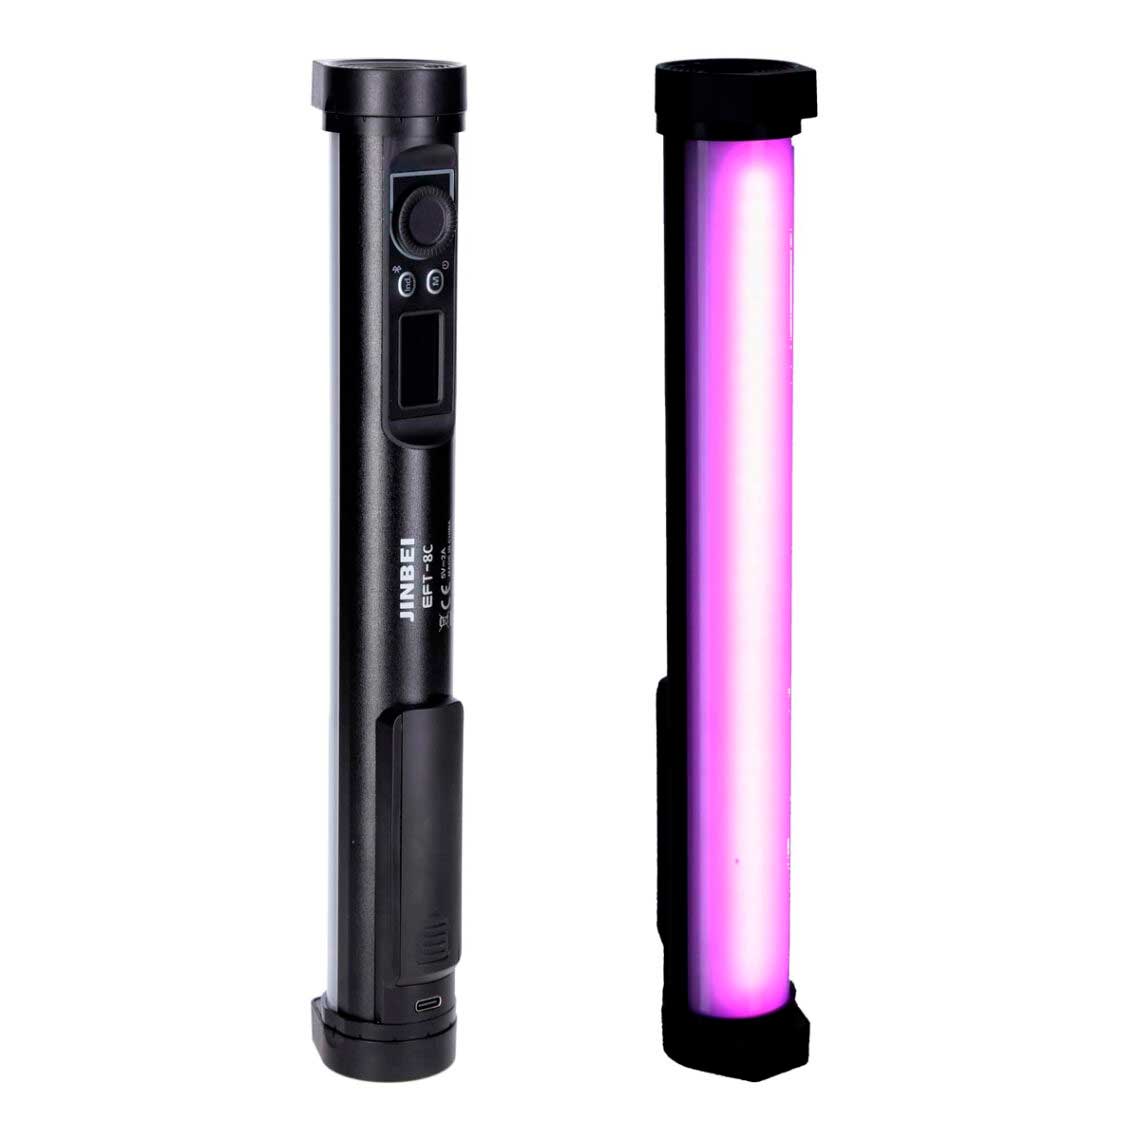 Mobile LED-Dauerlichter von Jinbei: EF-P10 RGB Pocket und EFT-8C RGB LED Tube Light